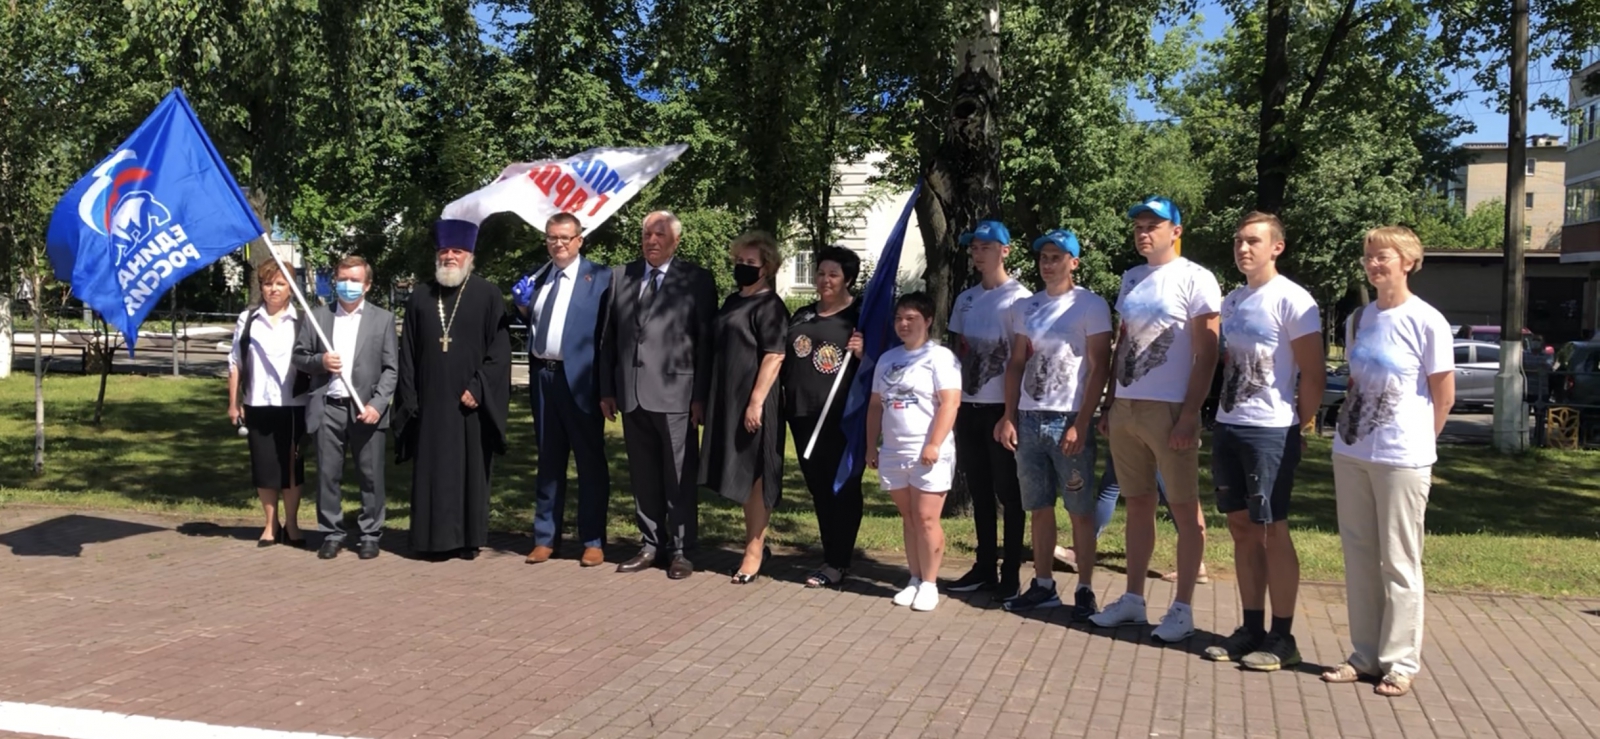 Контрольно-счетная палата городского округа Ступино Московской области приняла участие в  памятном митинге 22.06.2020 года